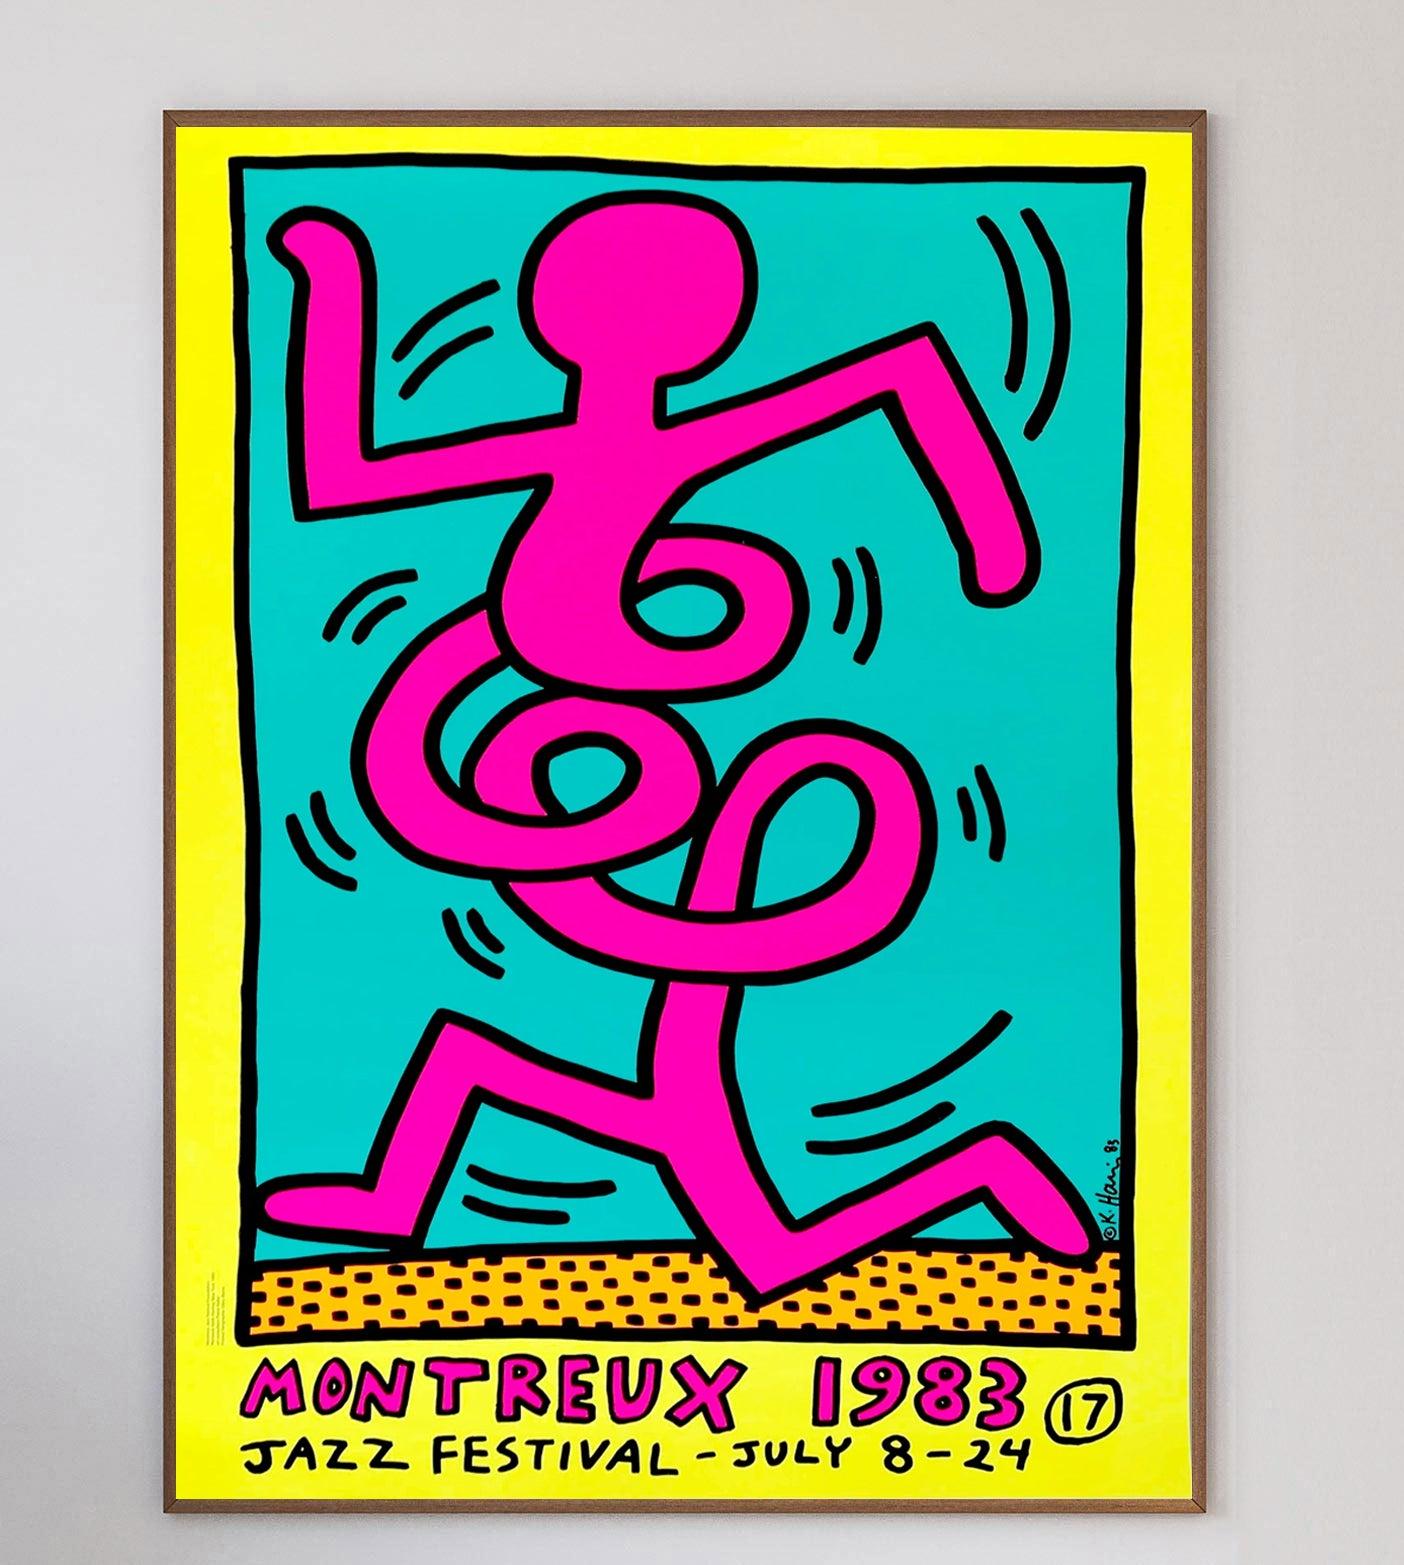 En 1983, Keith Haring a été invité à créer une affiche pour l'emblématique festival de jazz de Montreux. Il a alors soumis trois dessins qui ont été immédiatement acceptés. Haring s'est rendu à Montreux pour l'événement et a passé tout son temps à